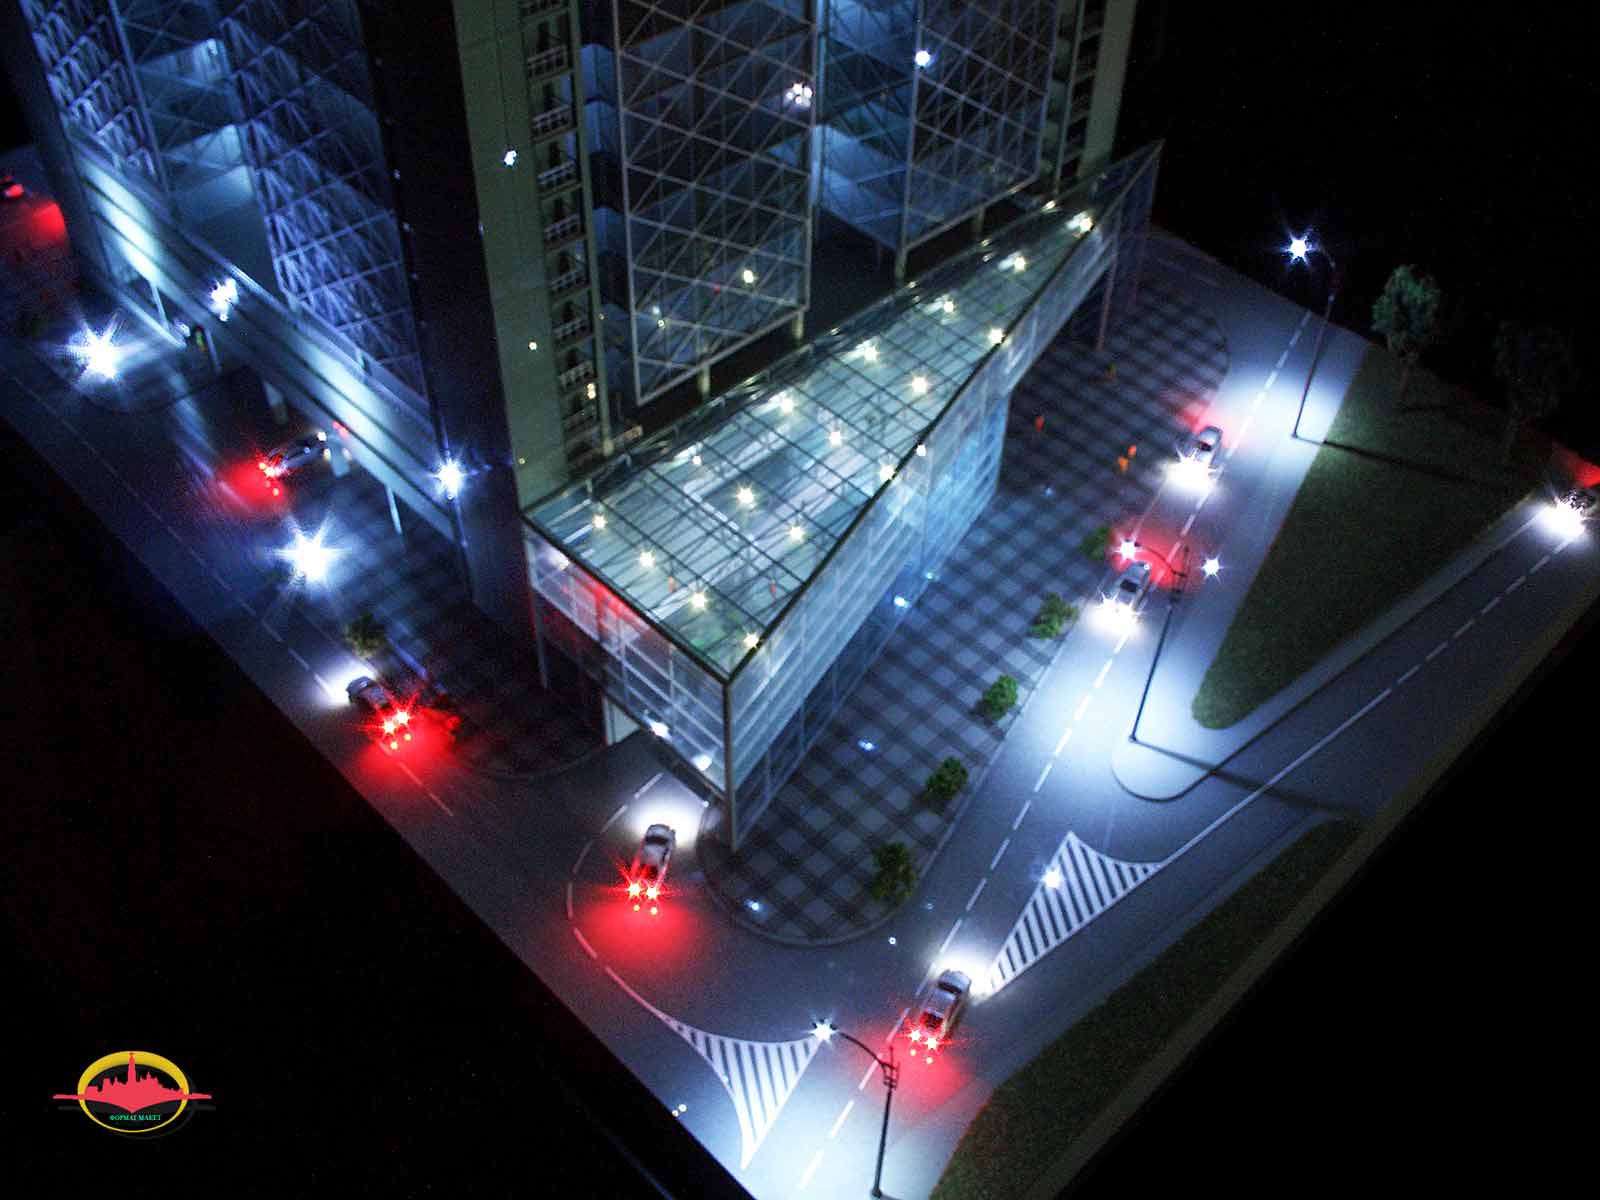 Модель офисного здания. Архитектор Алексей Брыль. Масштаб 1:100.